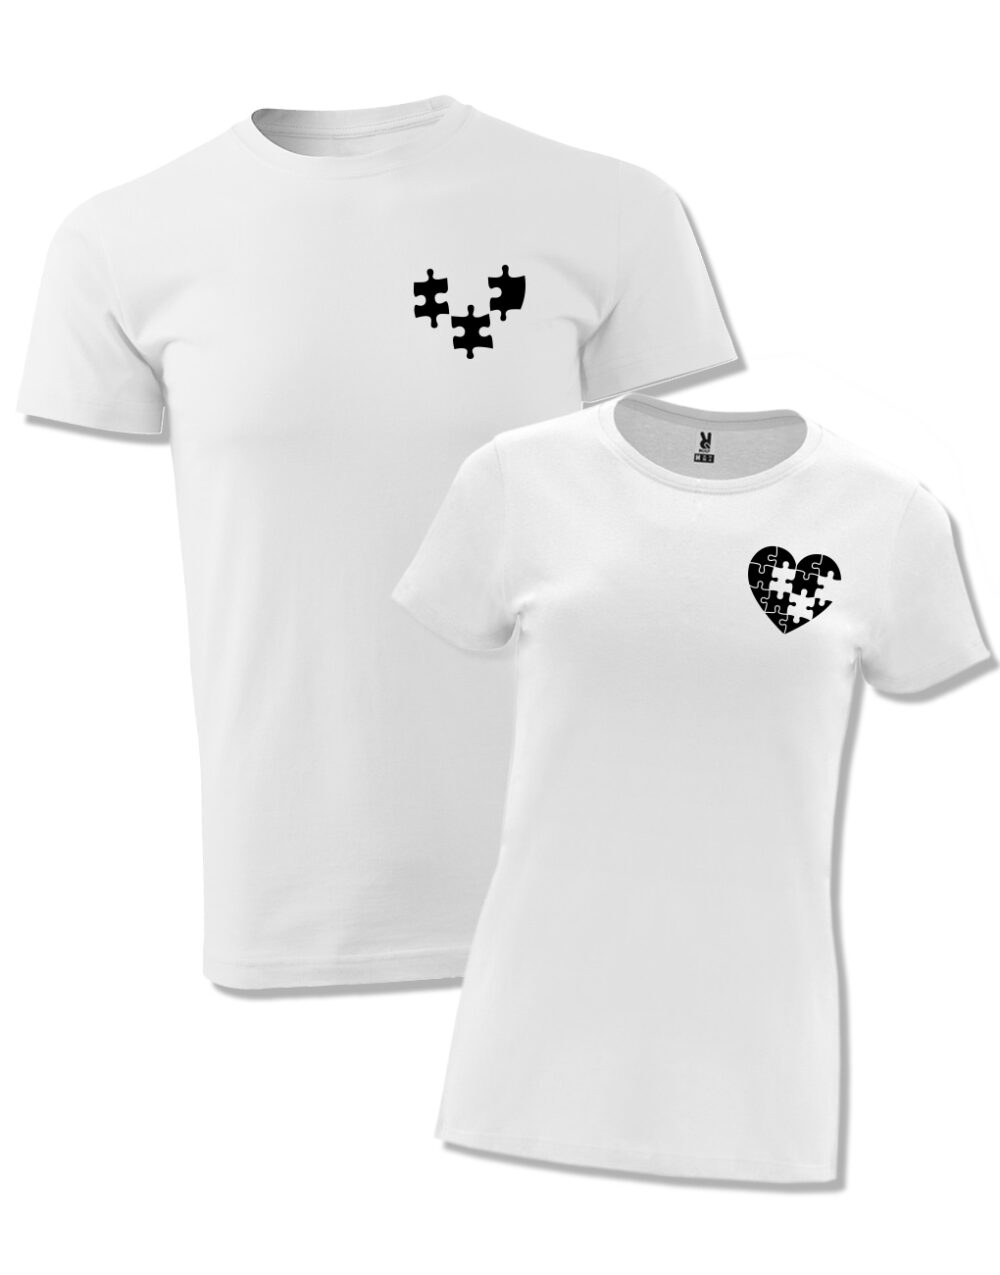 Párová trička s potiskem Puzzle bílá